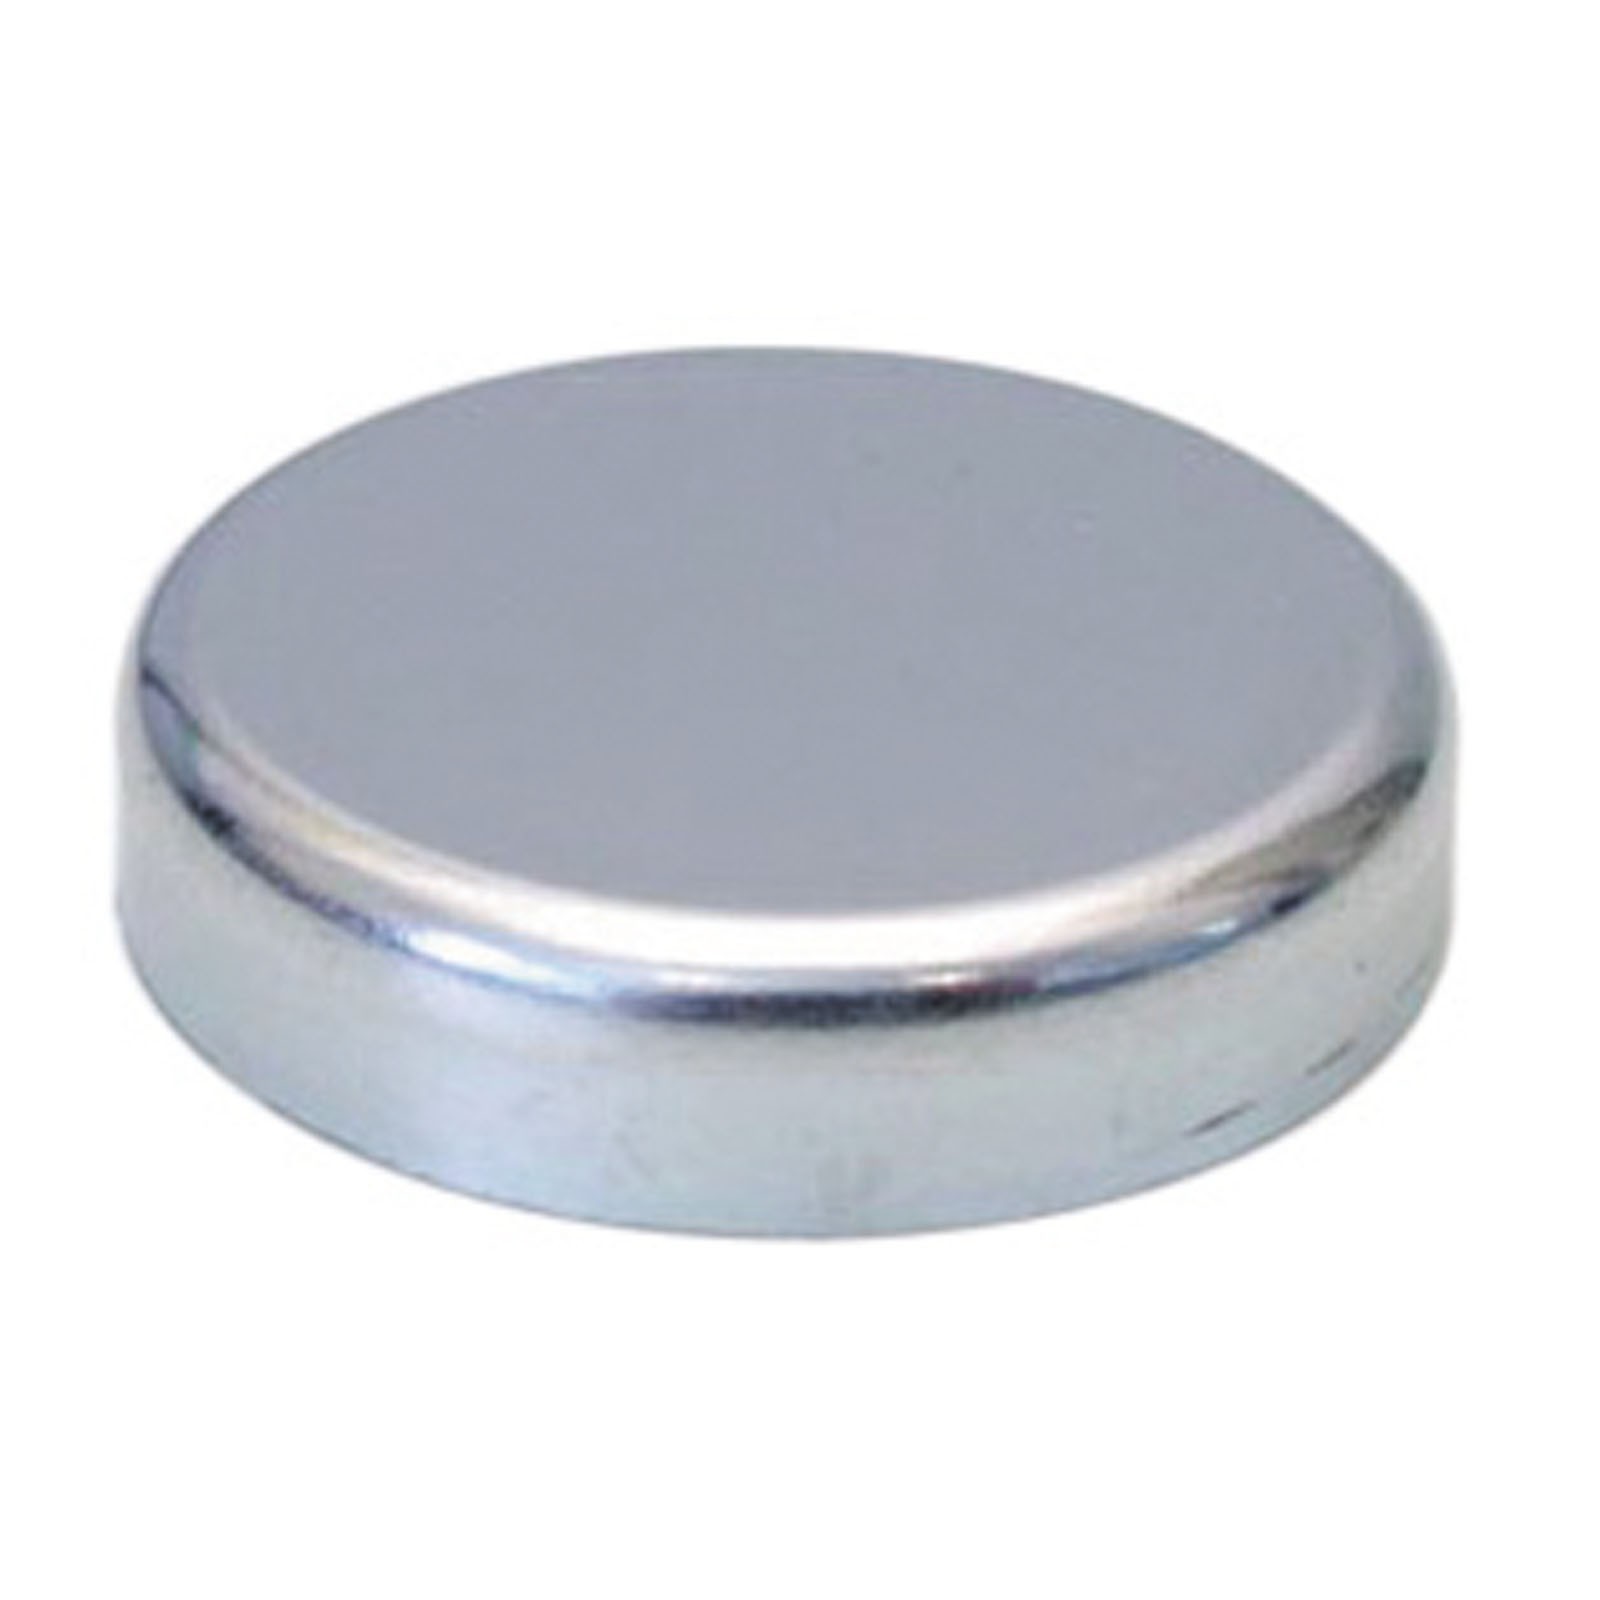 Flachgreifer Magnet Neodym Magnetfuß Oxit Hartferrit div Größen bis 125mm 1300 N Größe:10.0 mm von Rimag